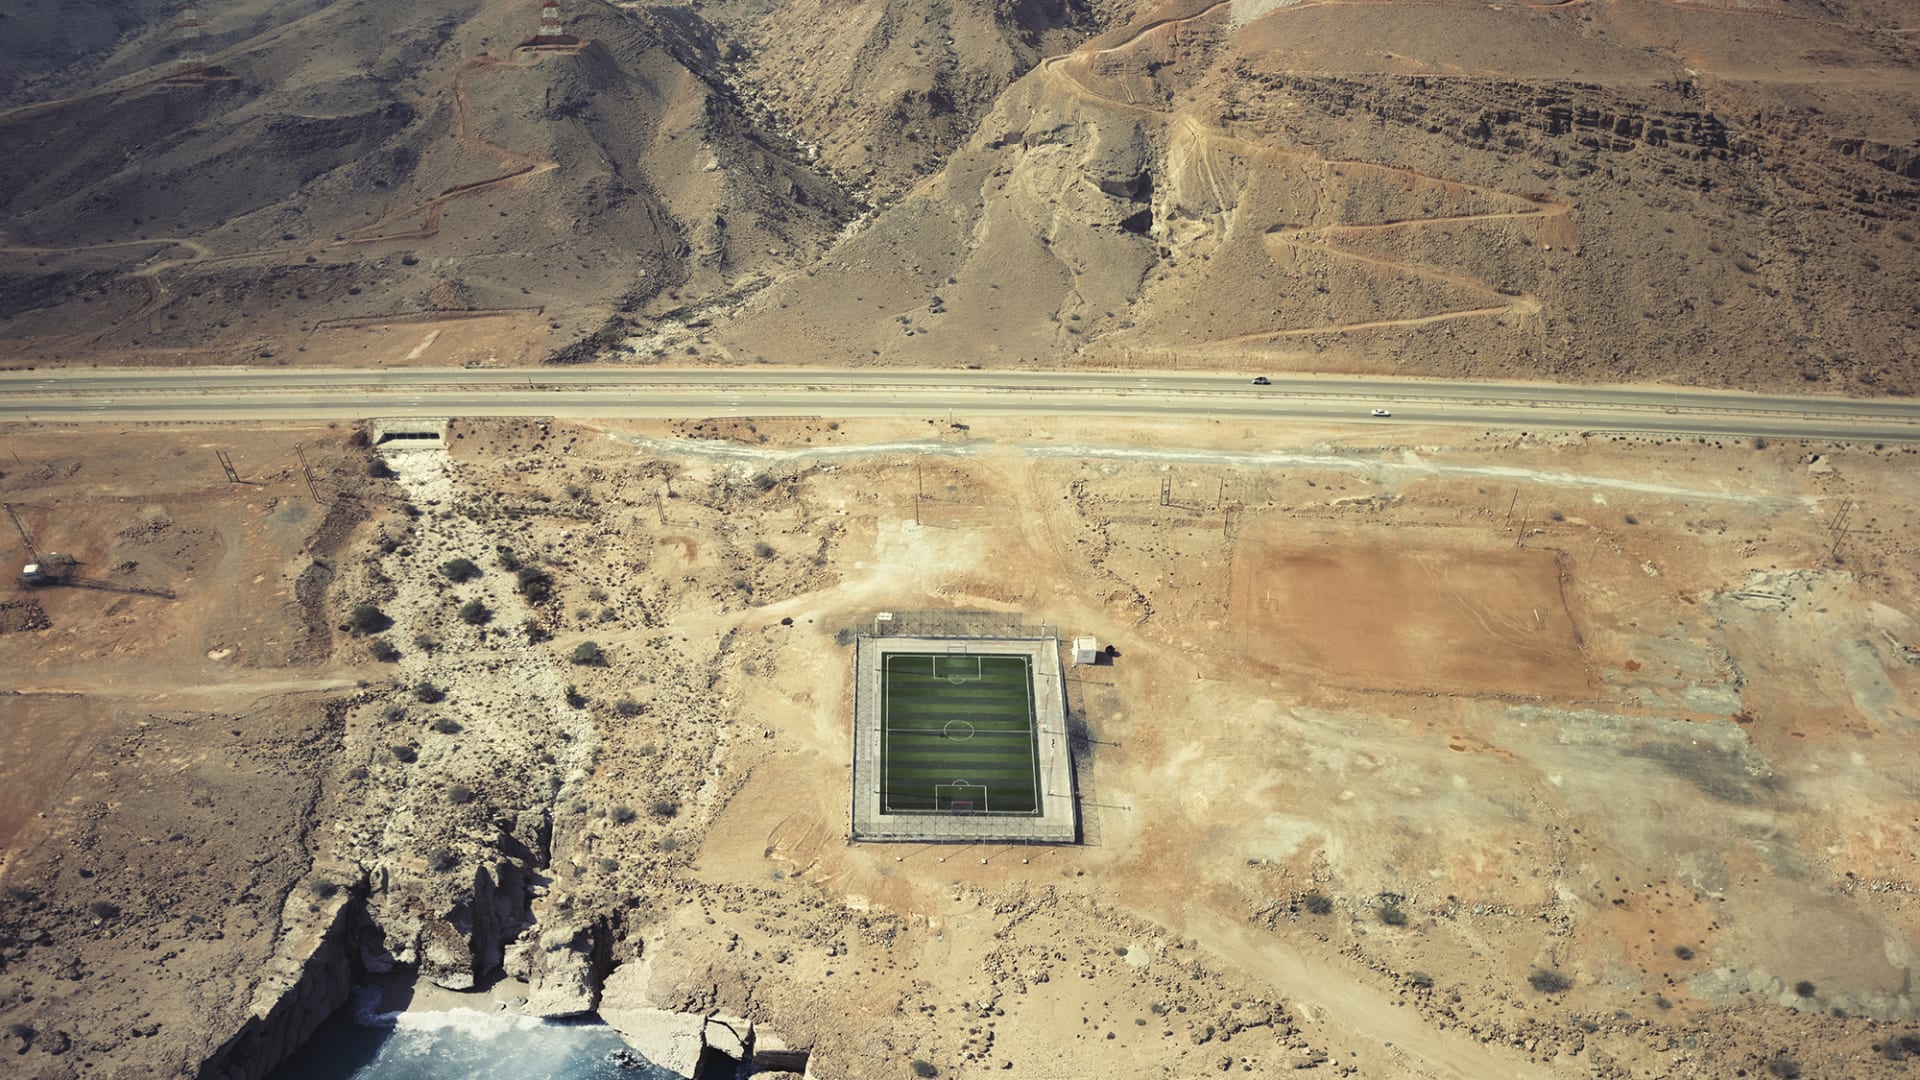 حقيقة أم "فوتوشوب"..ملعب كرة قدم مخبأ وسط الطبيعة يثير الحيرة في سلطنة عمان